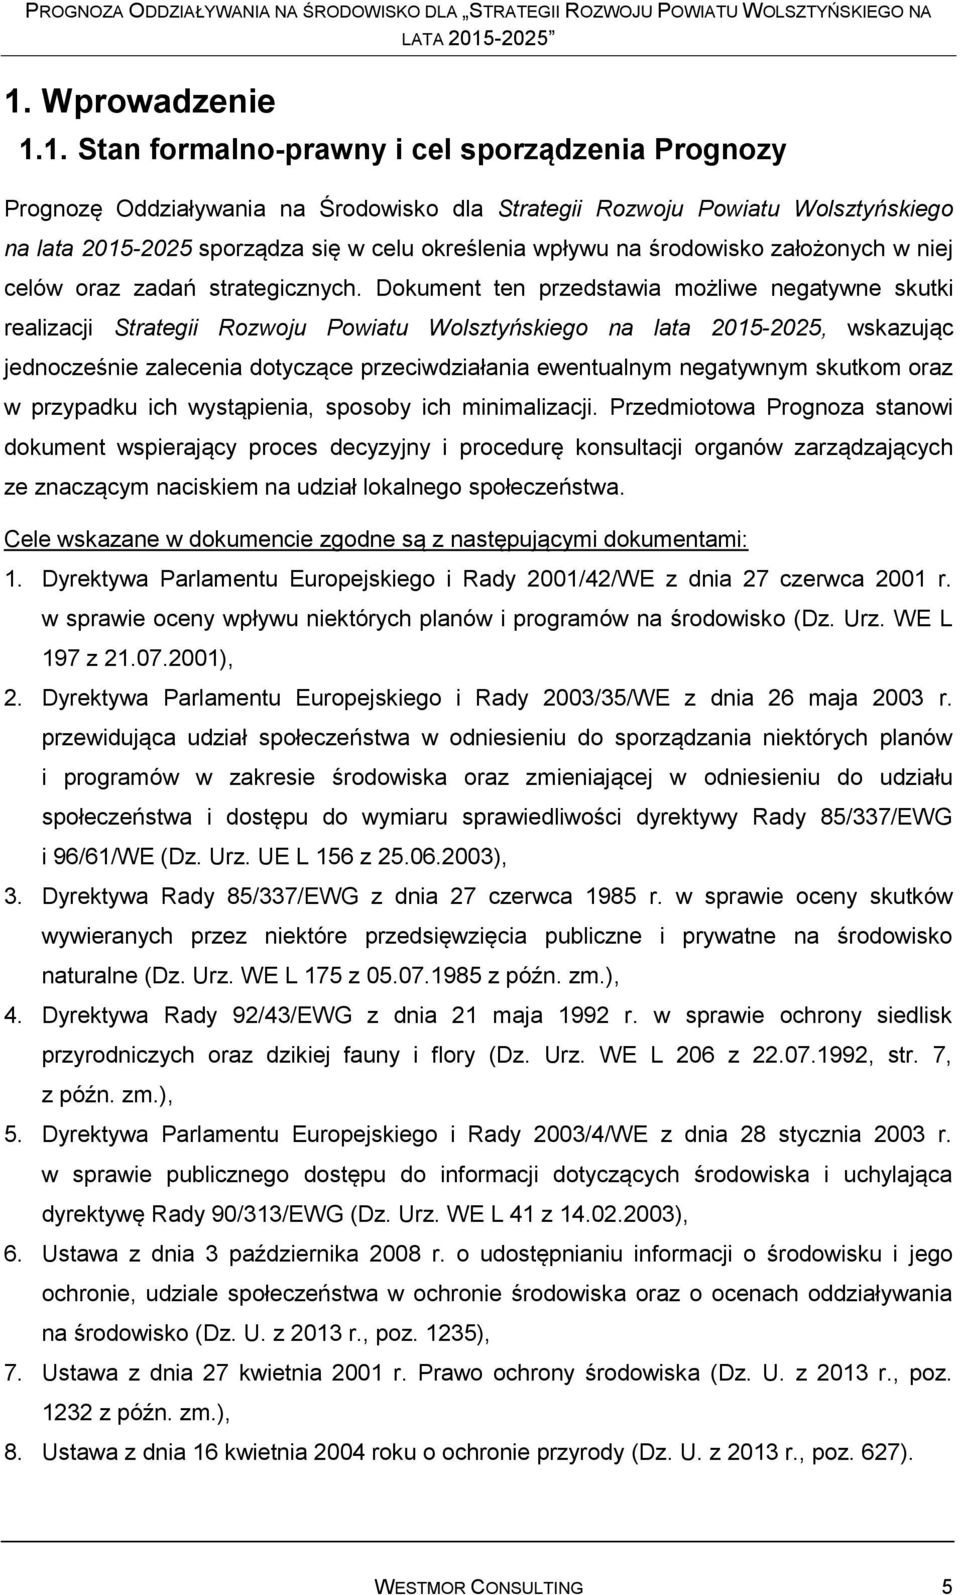 Dokument ten przedstawia możliwe negatywne skutki realizacji Strategii Rozwoju Powiatu Wolsztyńskiego na lata 2015-2025, wskazując jednocześnie zalecenia dotyczące przeciwdziałania ewentualnym